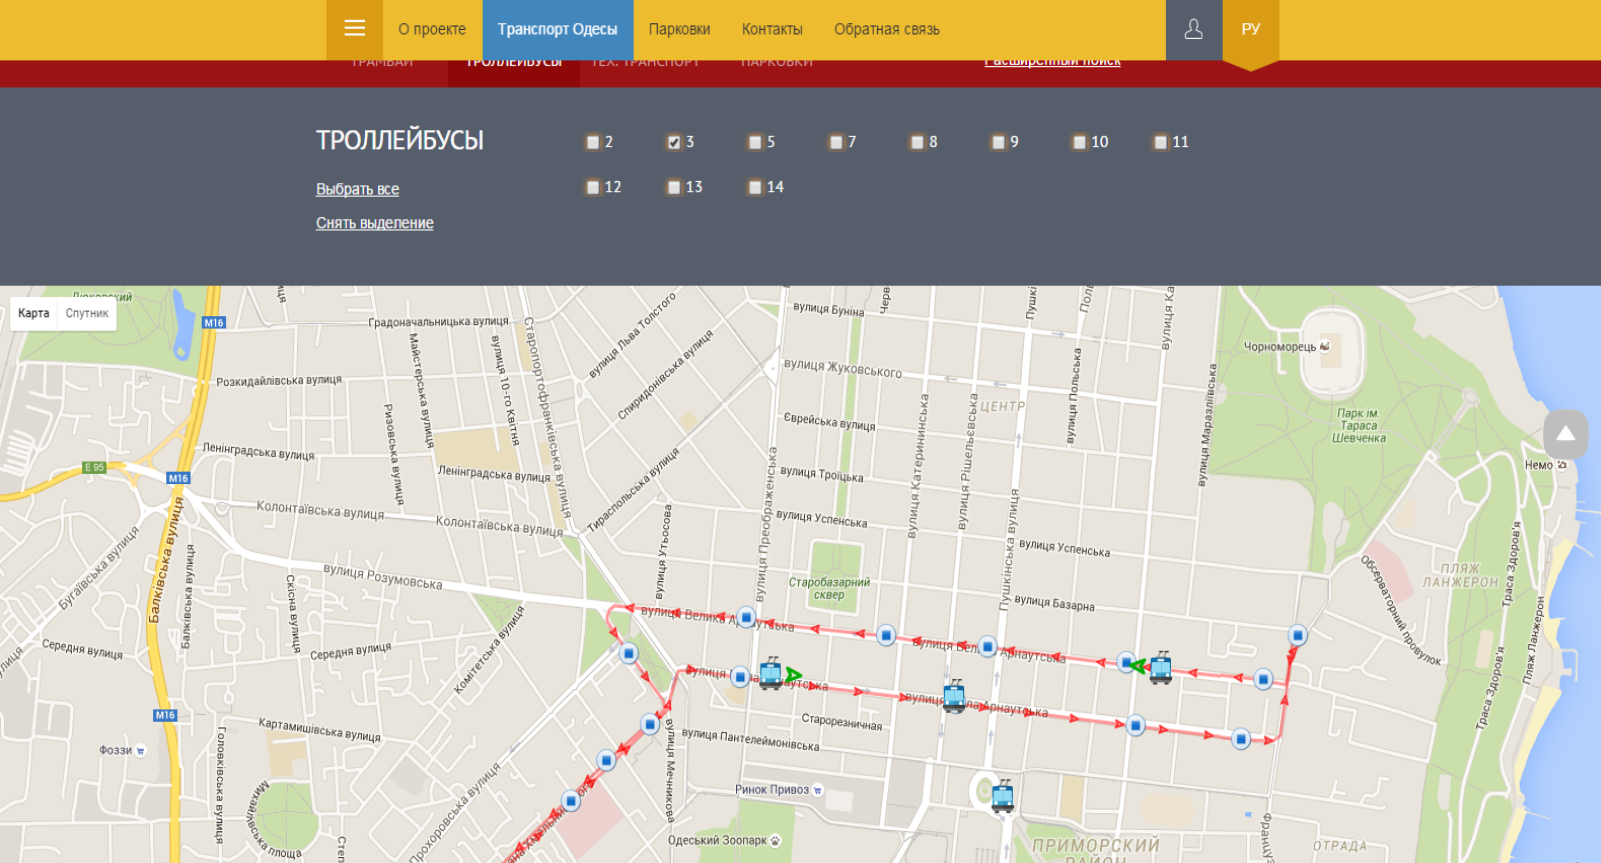 В Одессе запущен сайт, позволяющий отслеживать движение общественного транспорта - 1 - изображение